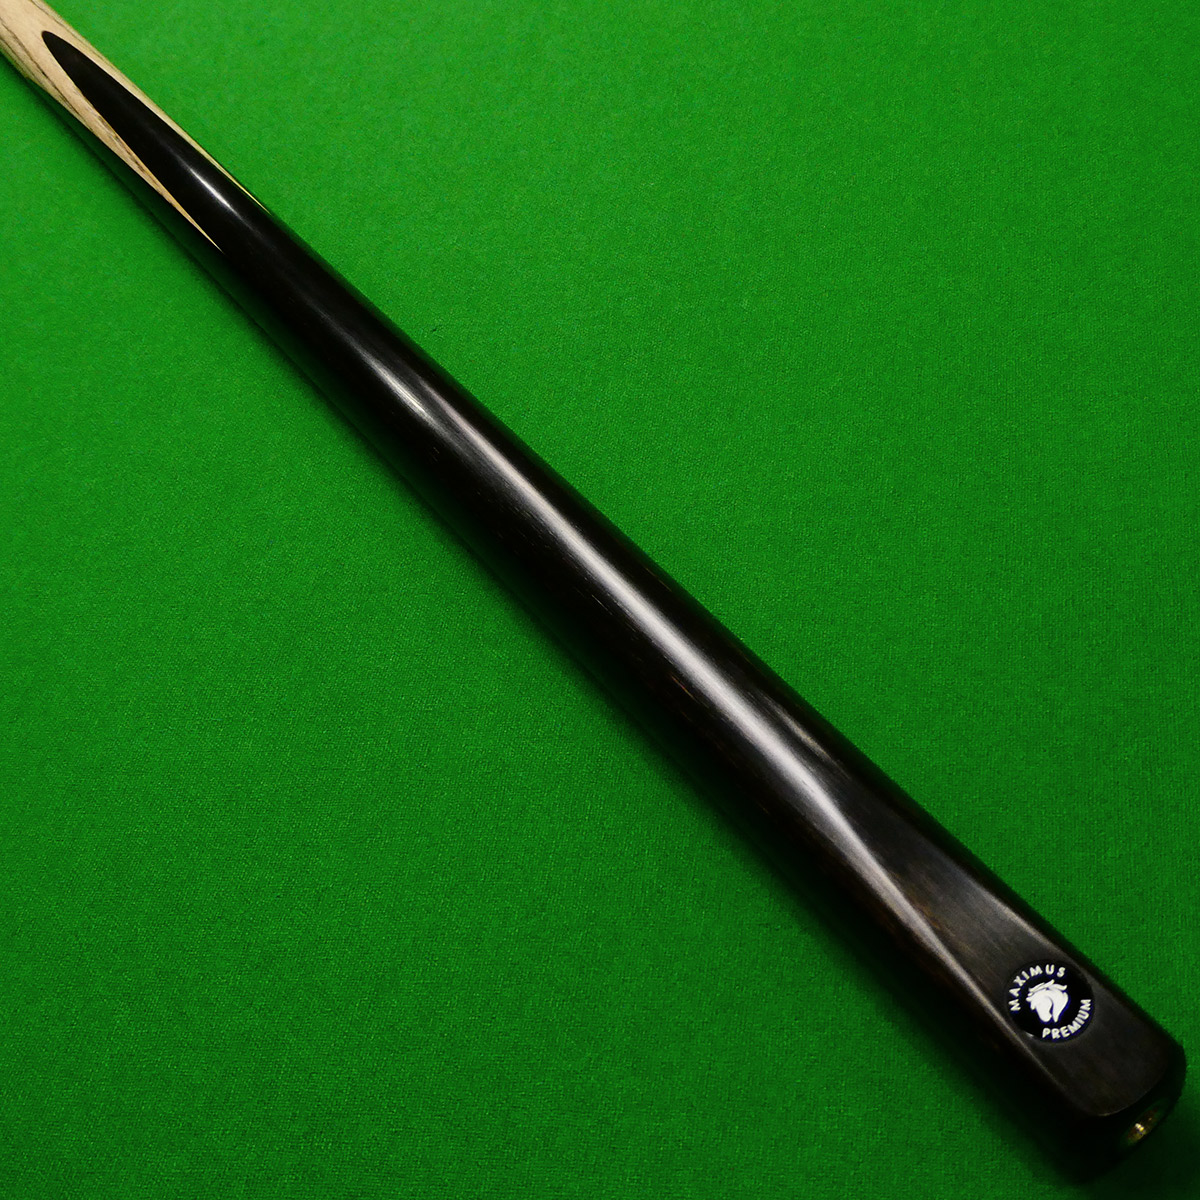 1pc Maximus Premium Snooker cue - Premium Ash shaft (S)